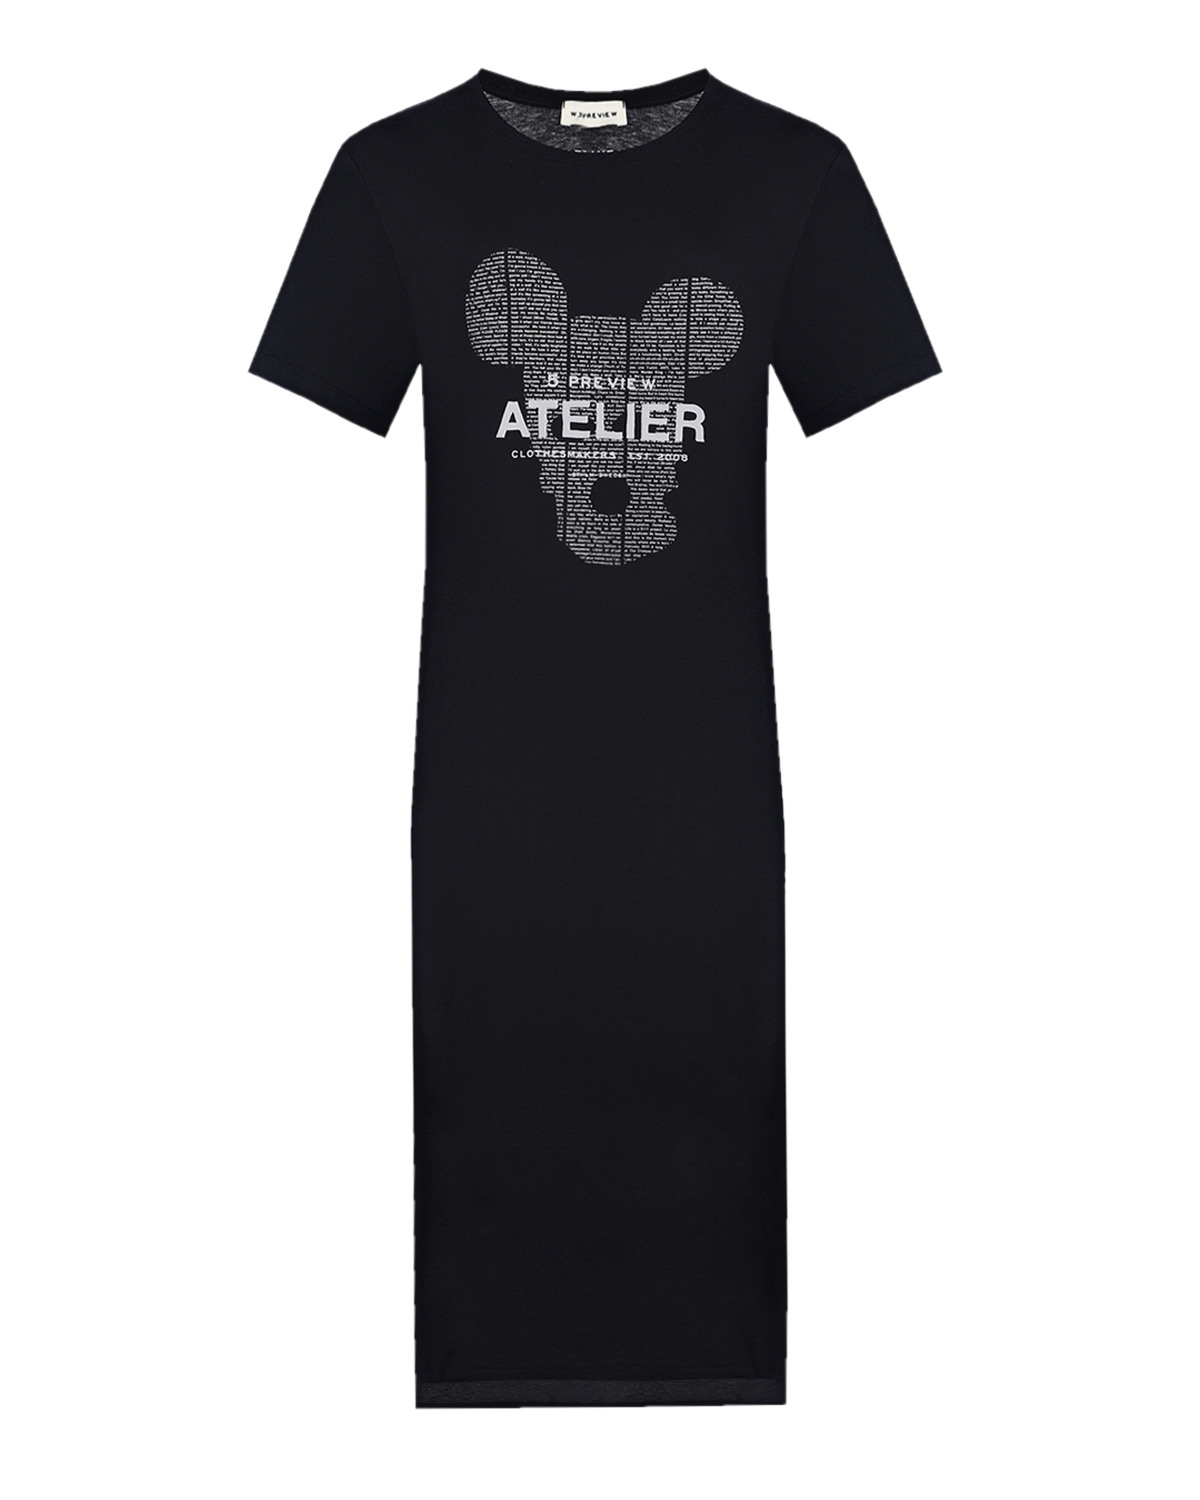 Платье-футболка с принтом "Atelier" 5 Preview, размер 40, цвет черный - фото 1